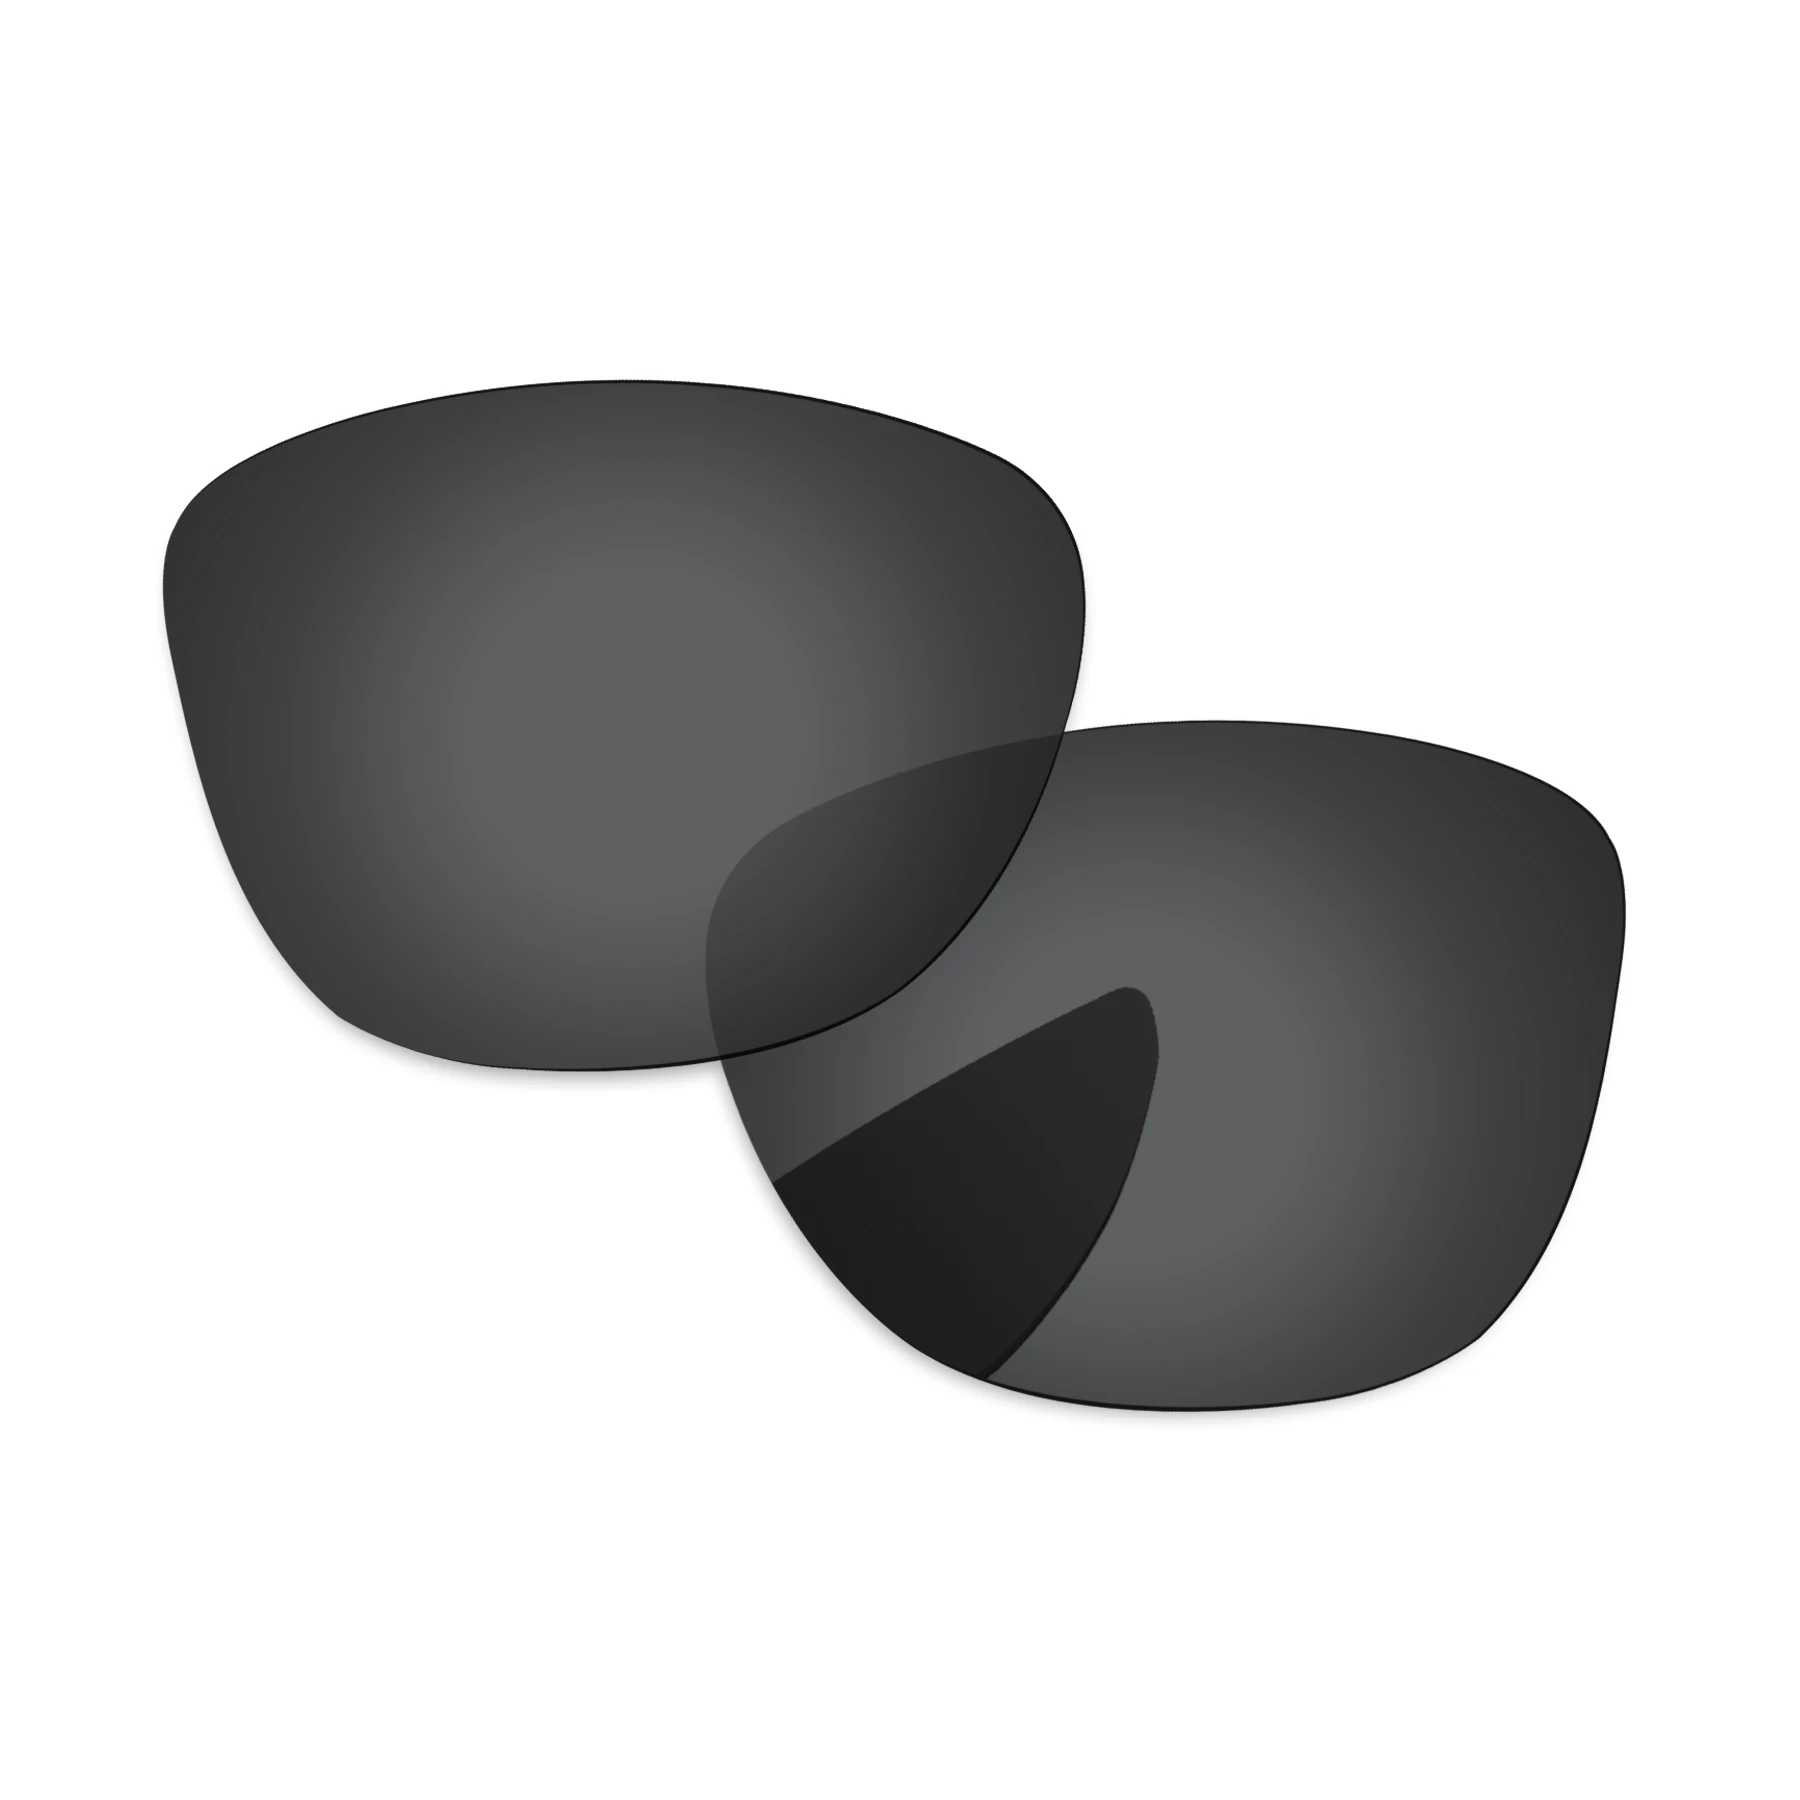 Međusobno Polarizirane leće Bsymbo Multi Options za sunčane naočale Costa Del Mar Bayside 06S9015